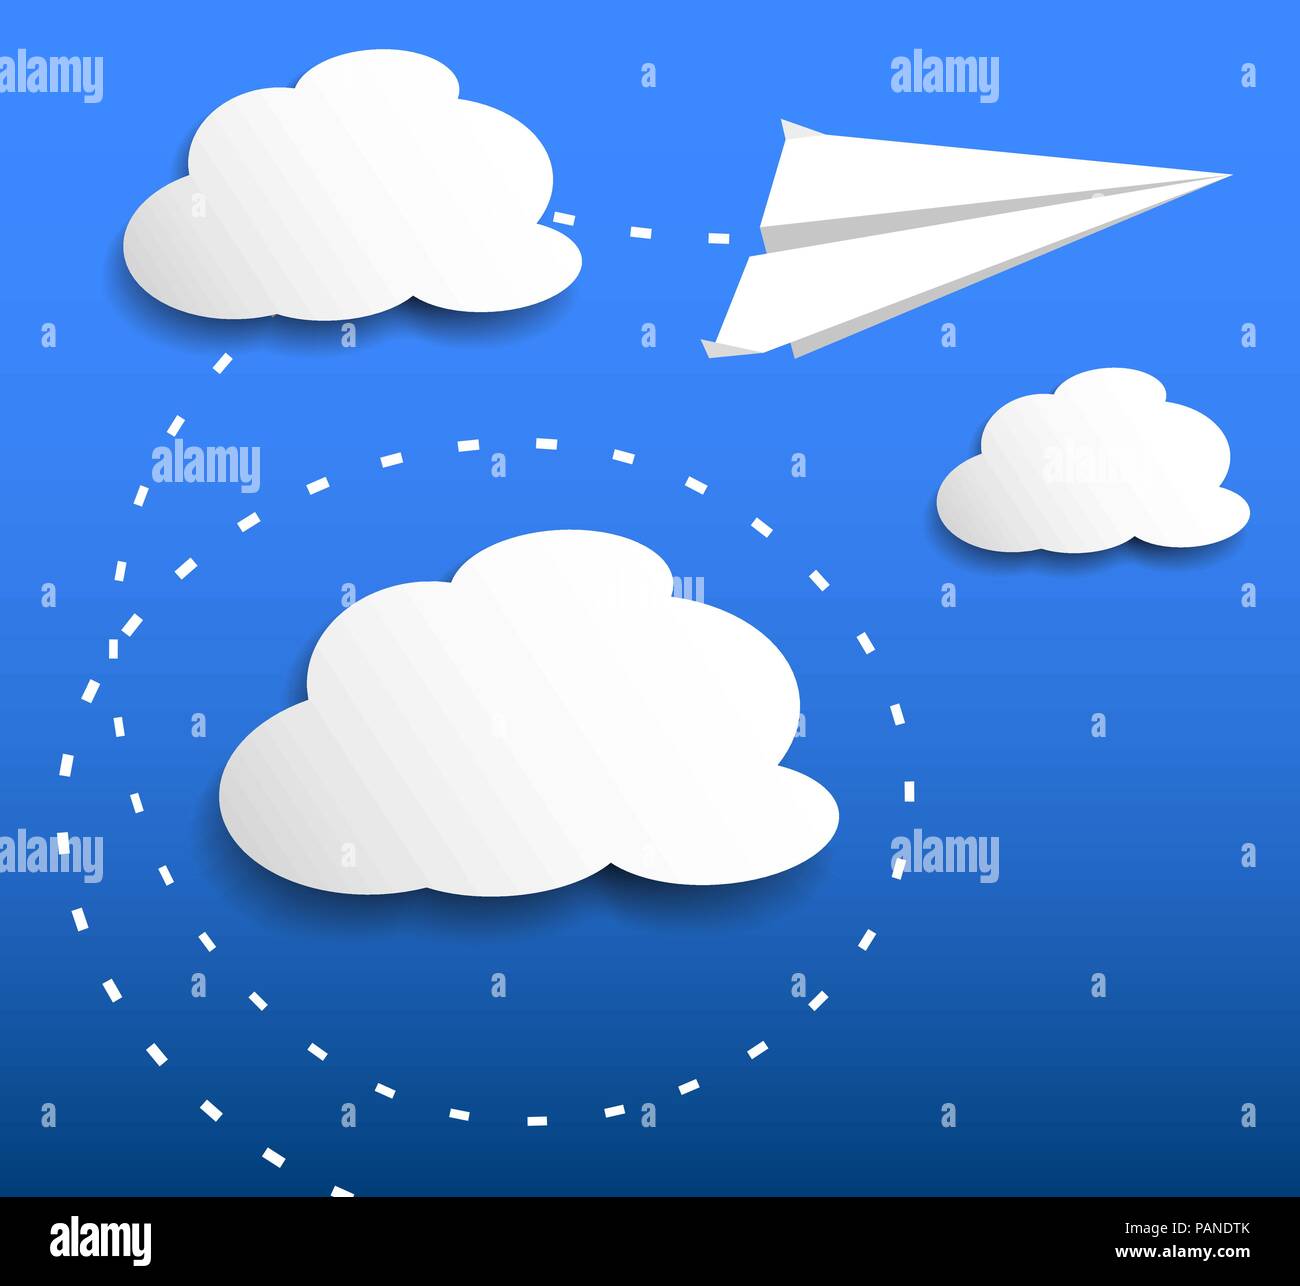 Aeroplano di carta flying attraverso le nuvole illustrazione vettoriale Illustrazione Vettoriale